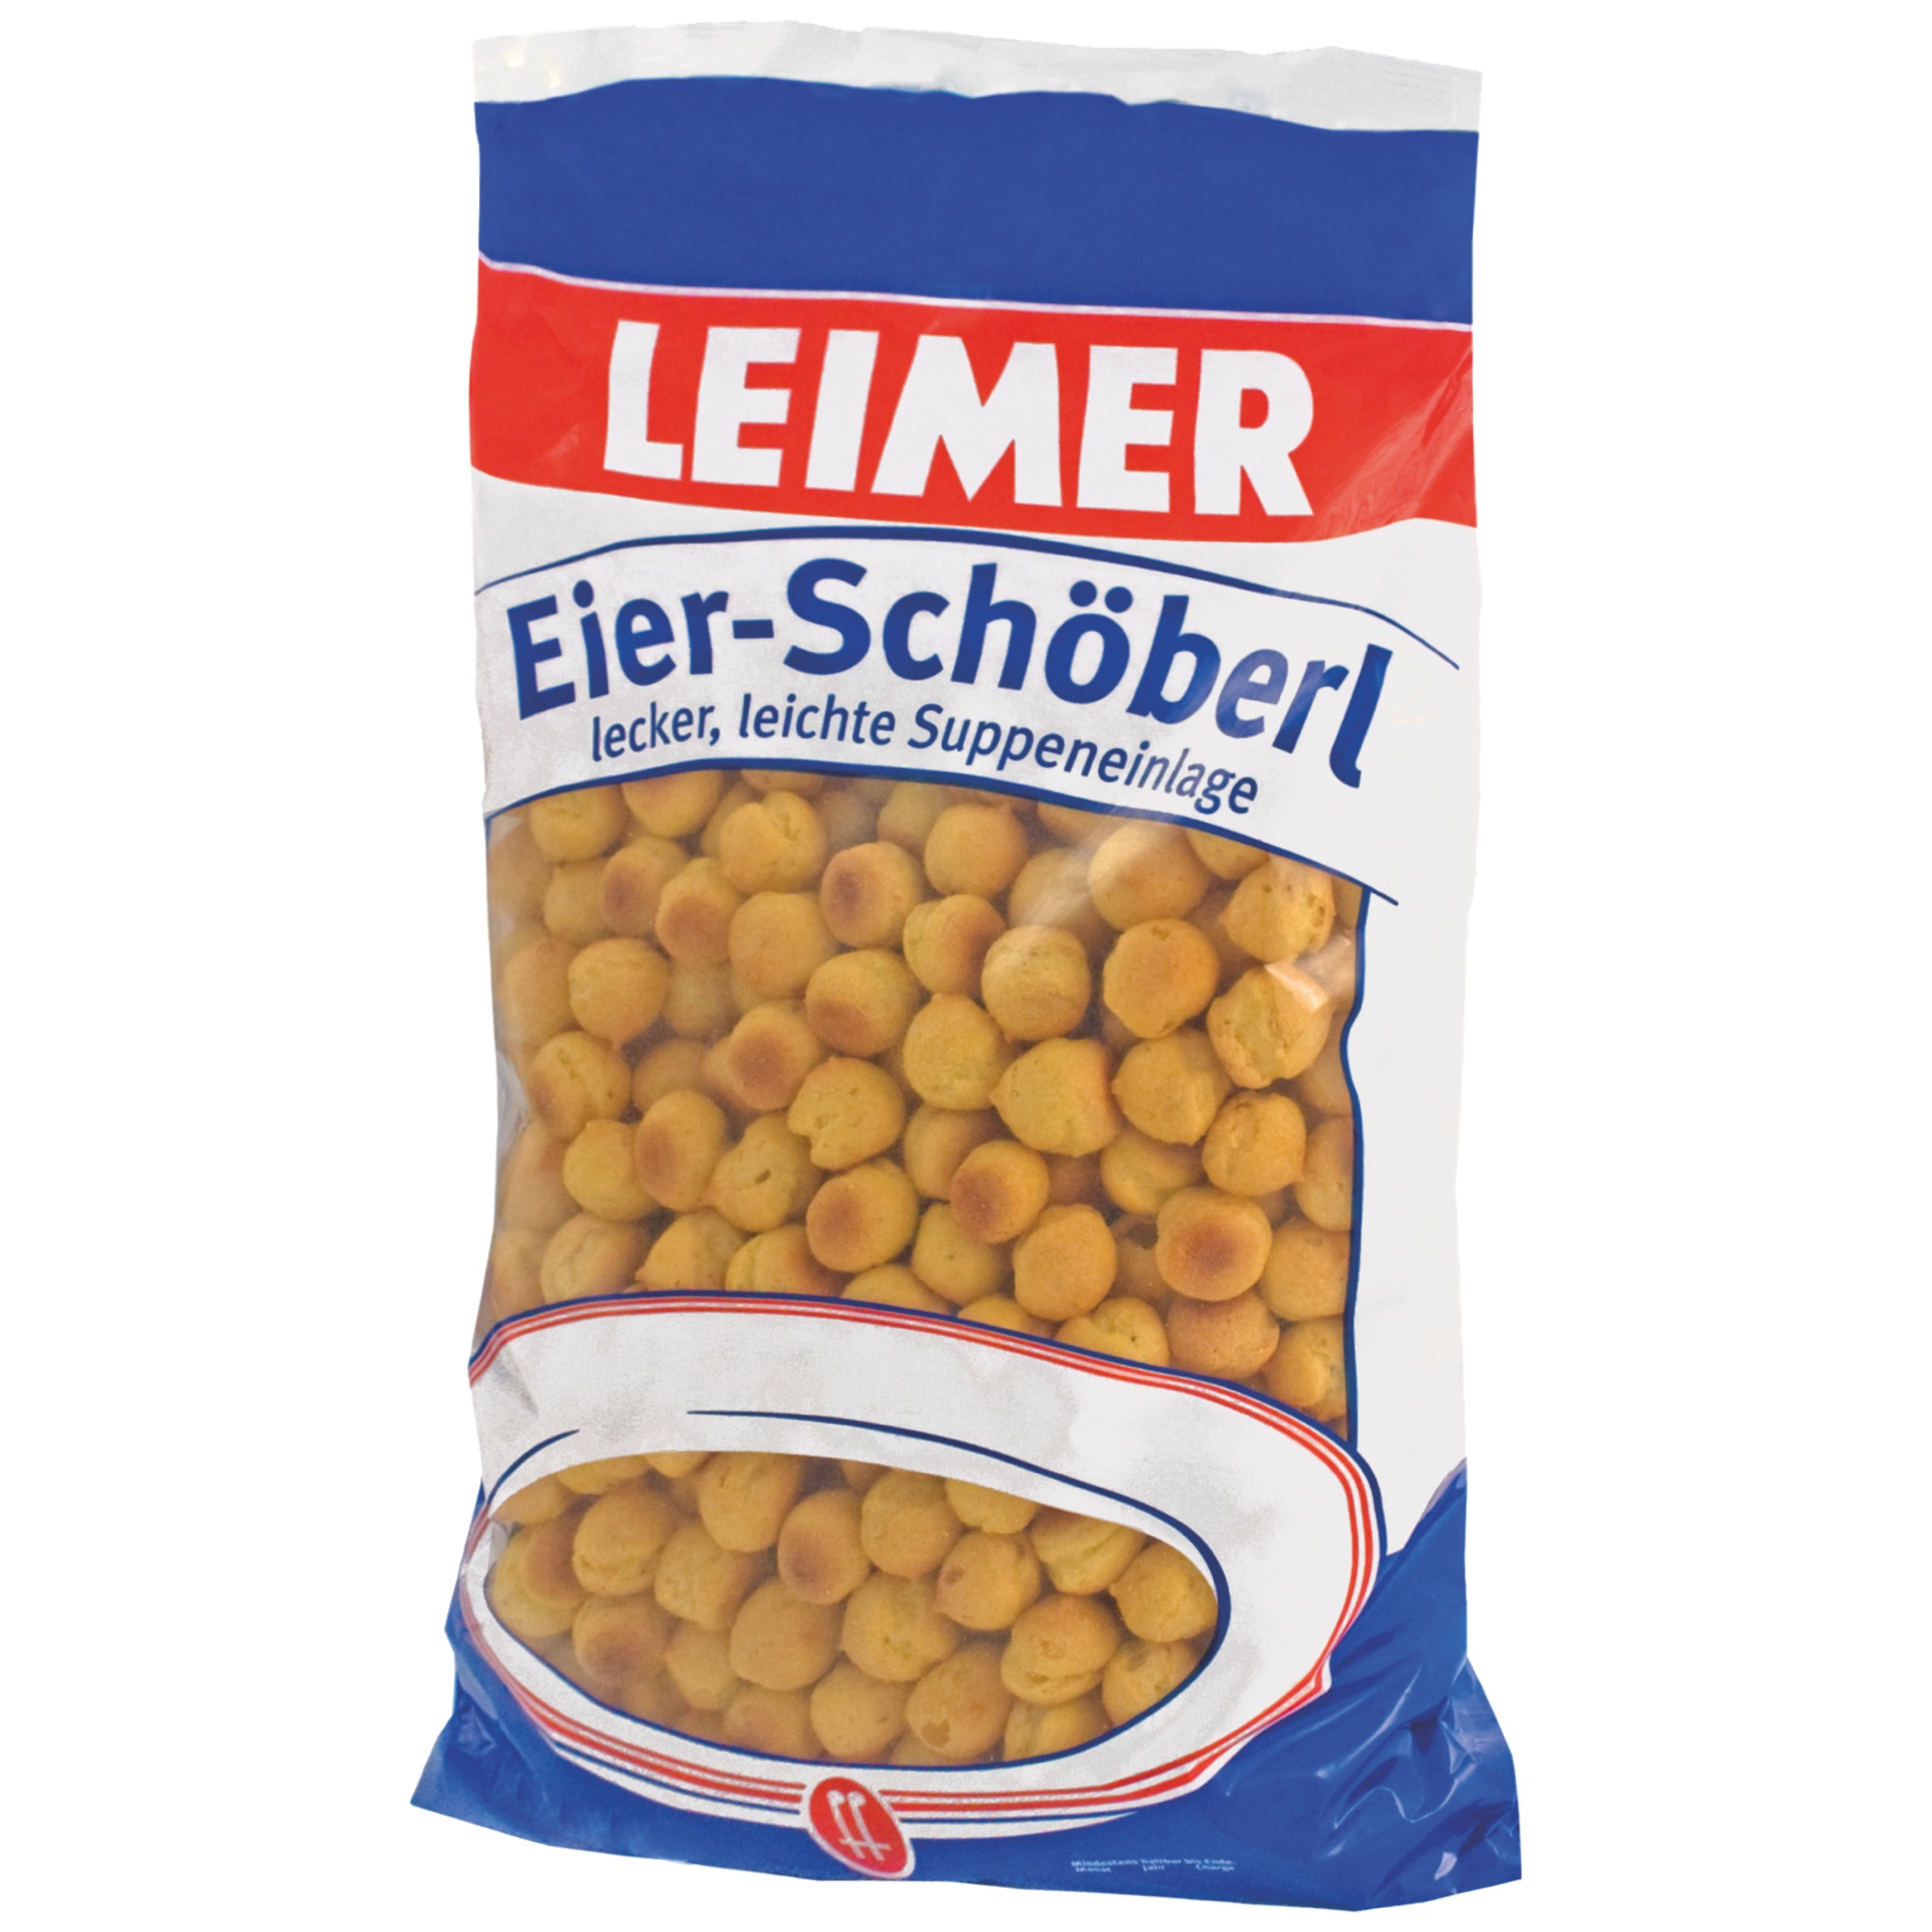 Leimer Eierschöberl do polievky 500g